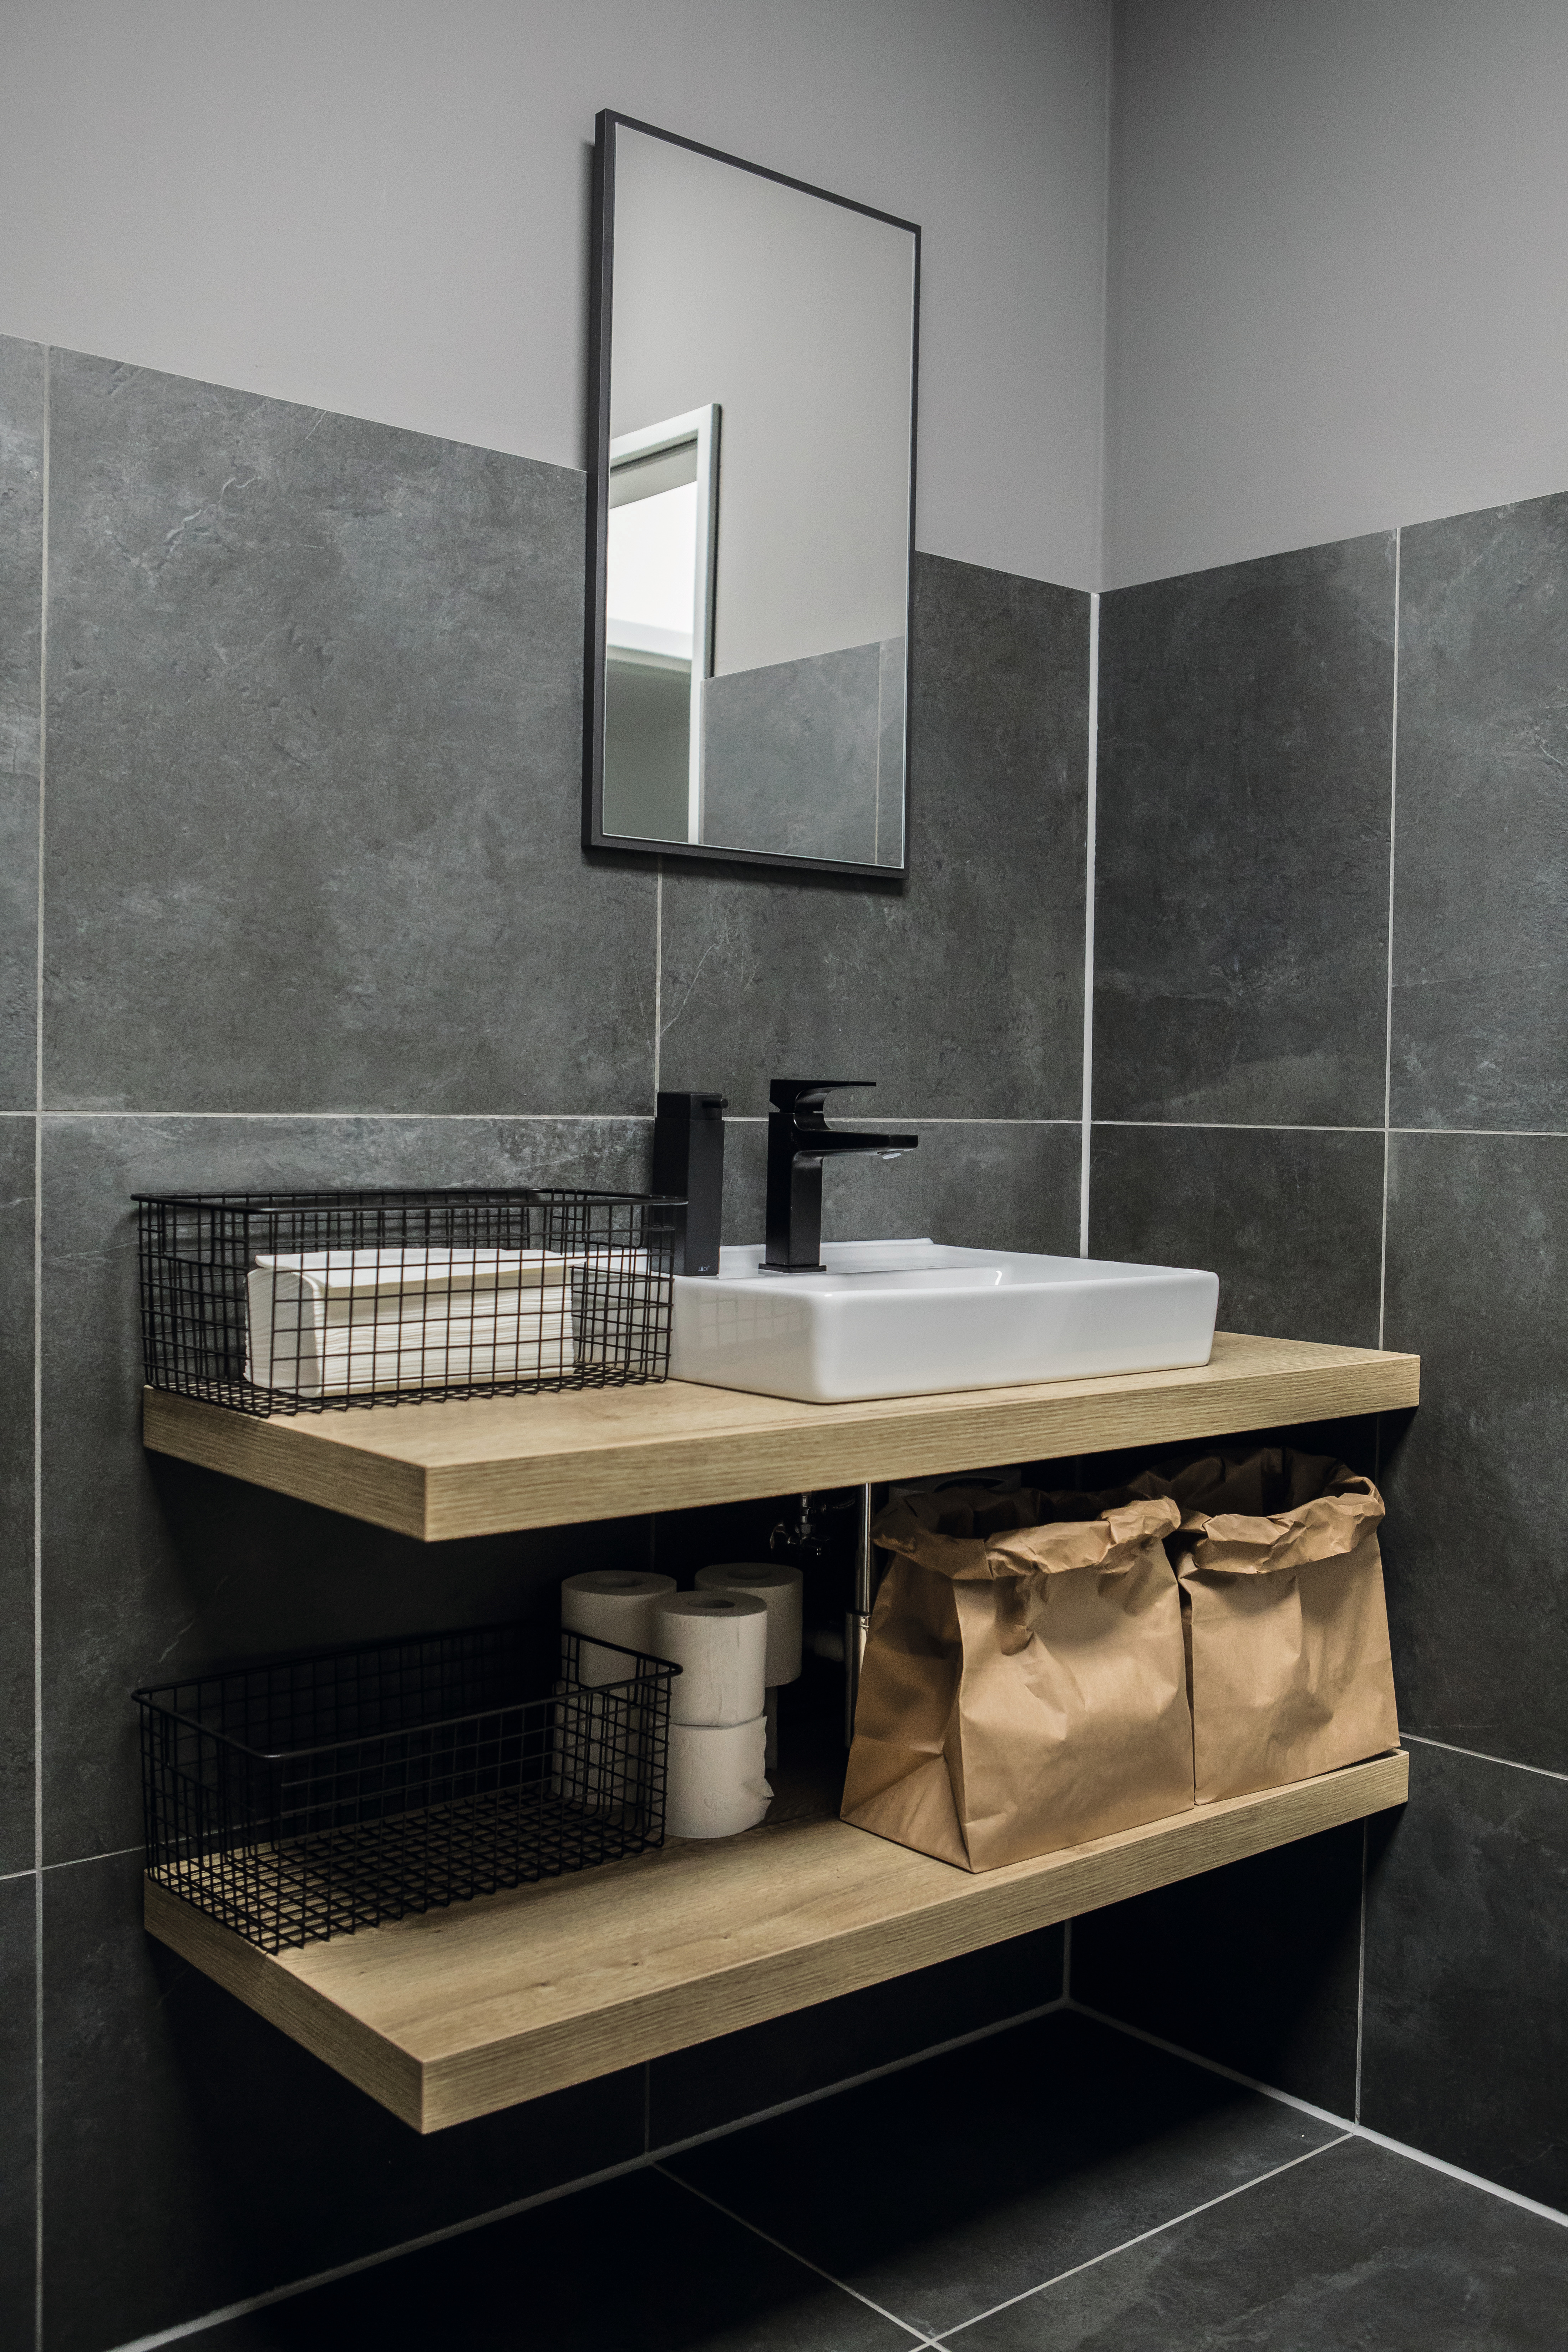 El diseño madera del lavabo culmina a la perfección el diseño en contraste entre blanco y negro.